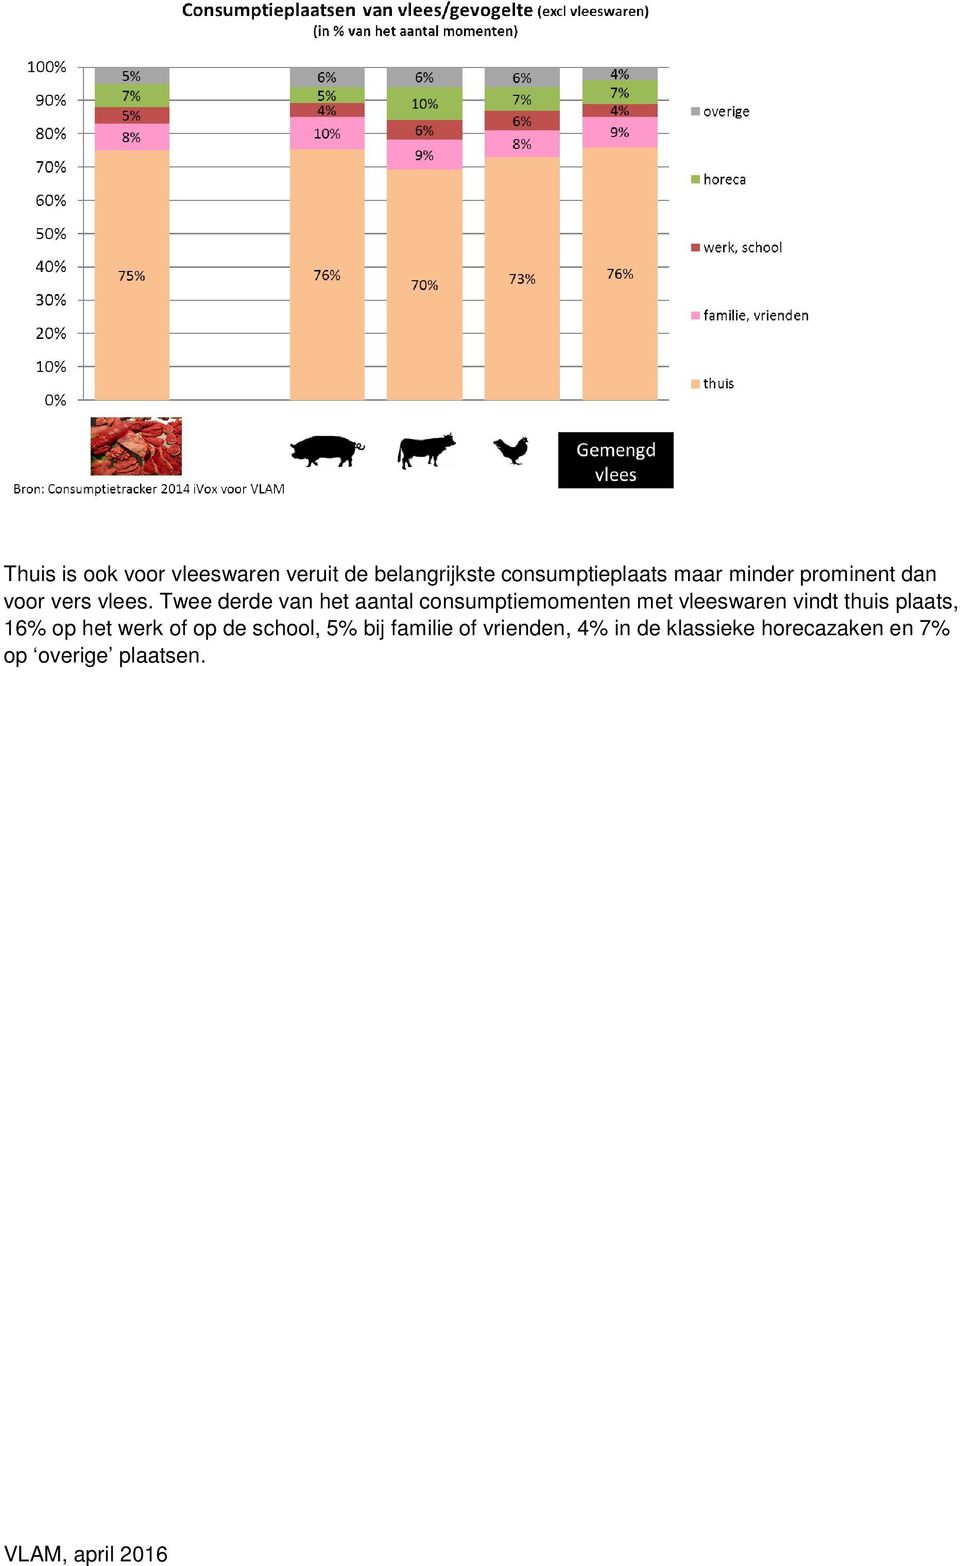 Twee derde van het aantal consumptiemomenten met vleeswaren vindt thuis